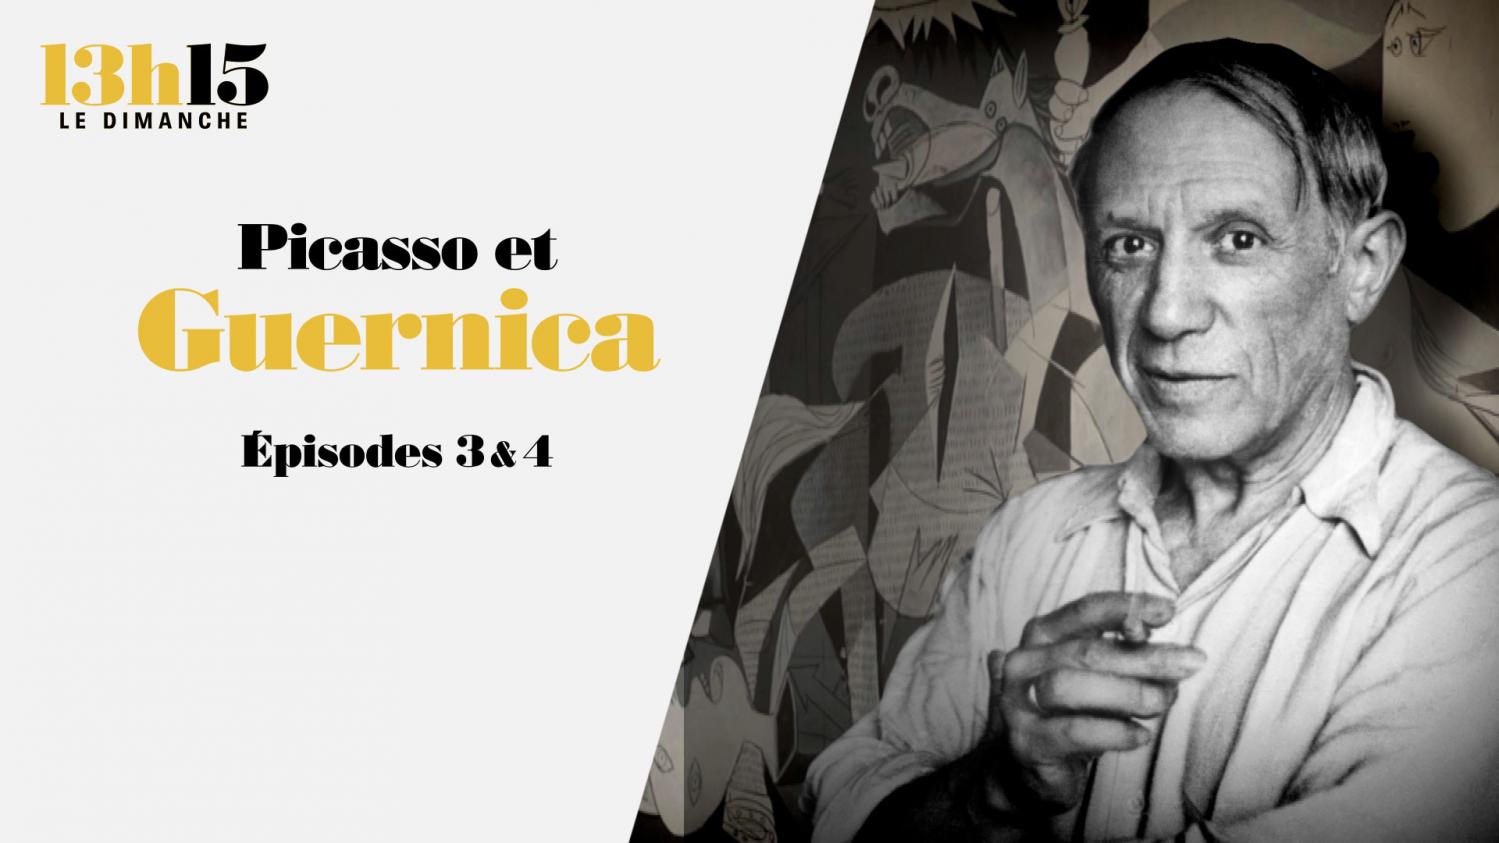 "13h15 le dimanche". Picasso et "Guernica" > Episodes 3 & 4 - France 2 - 23 mai 2021